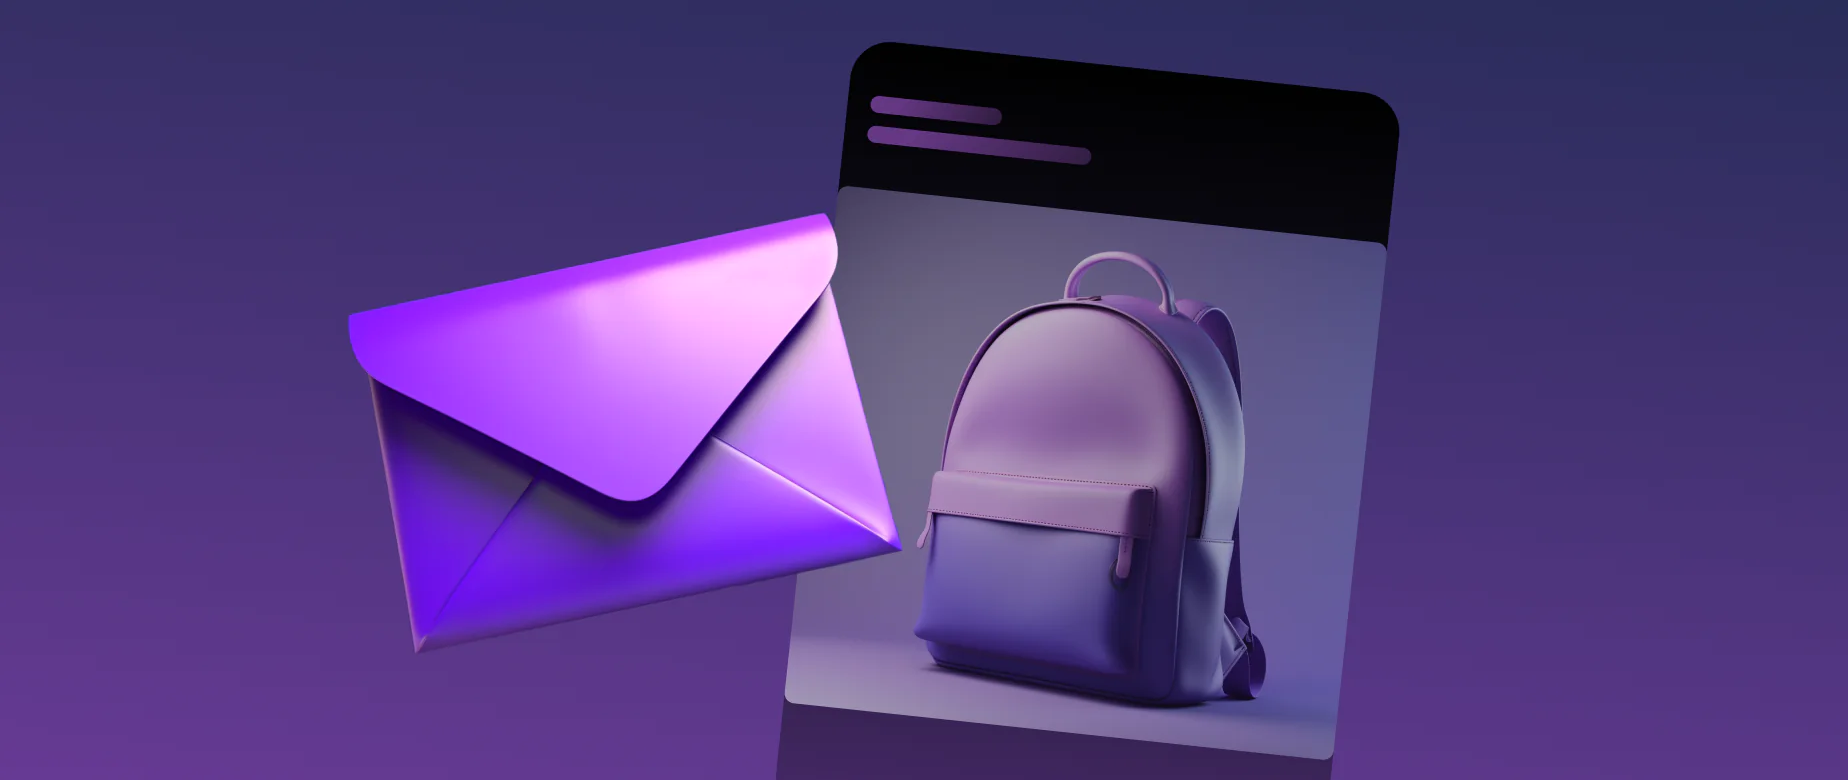 E-mail personalizado: sua mensagem na caixa de entrada dos clientes